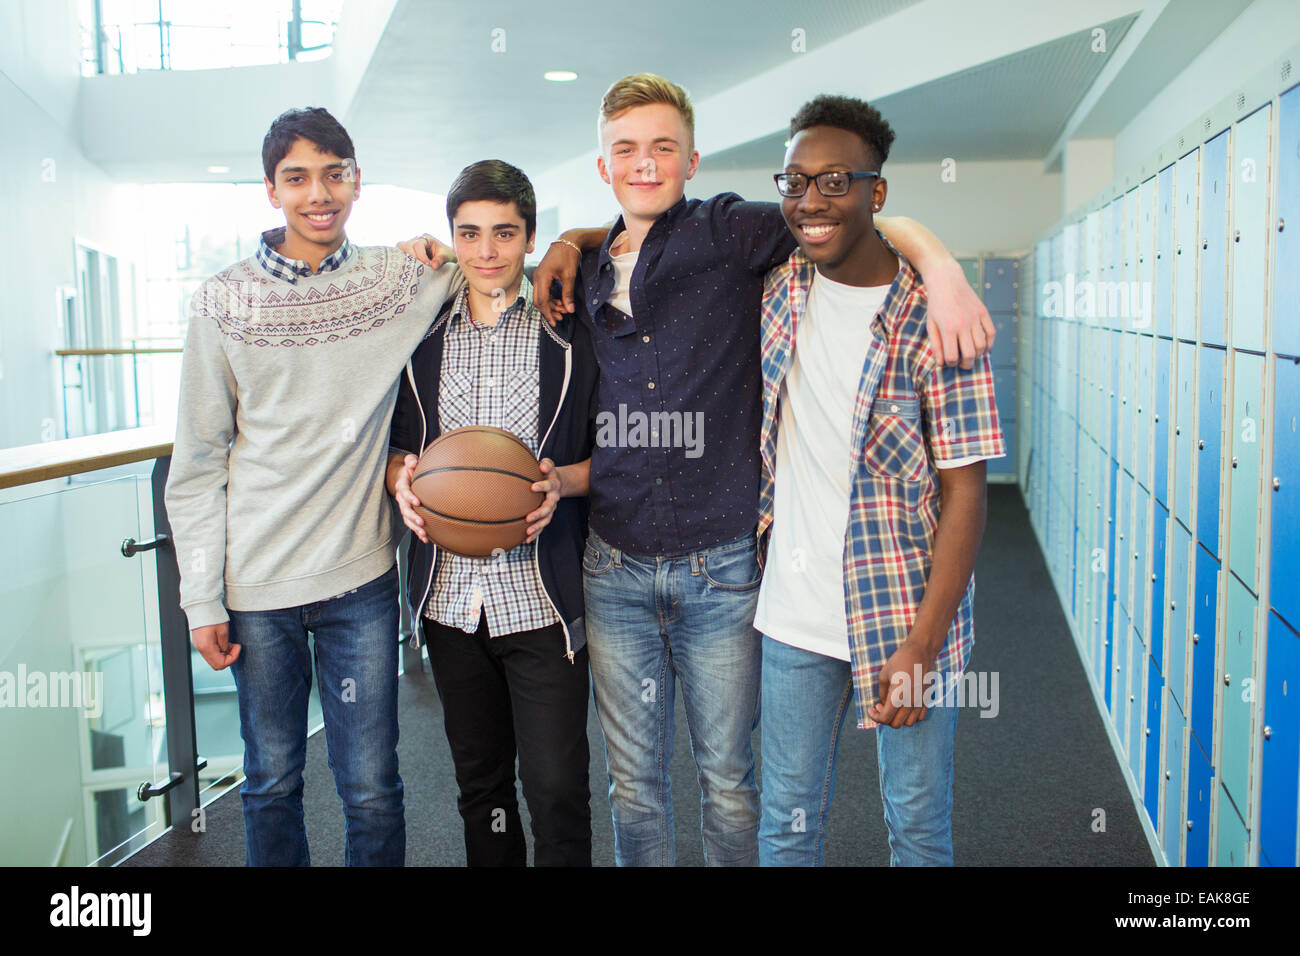 Gruppenbild der männlichen Studierenden mit Basketball in Schule Flur Stockfoto